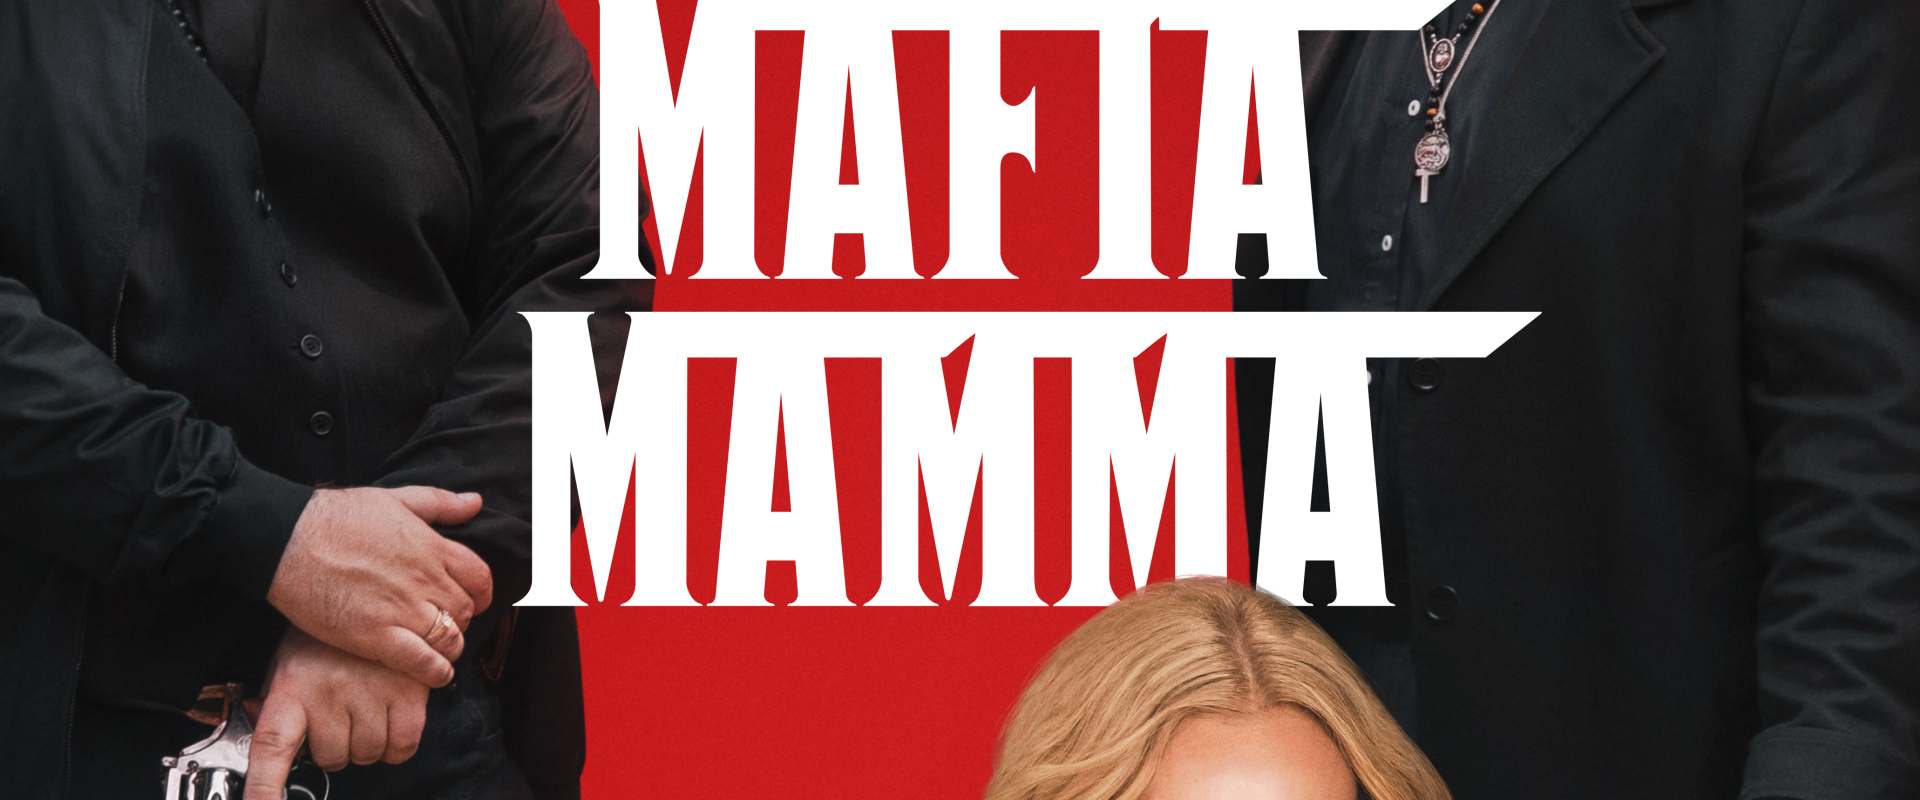 Mafia Mamma background 1